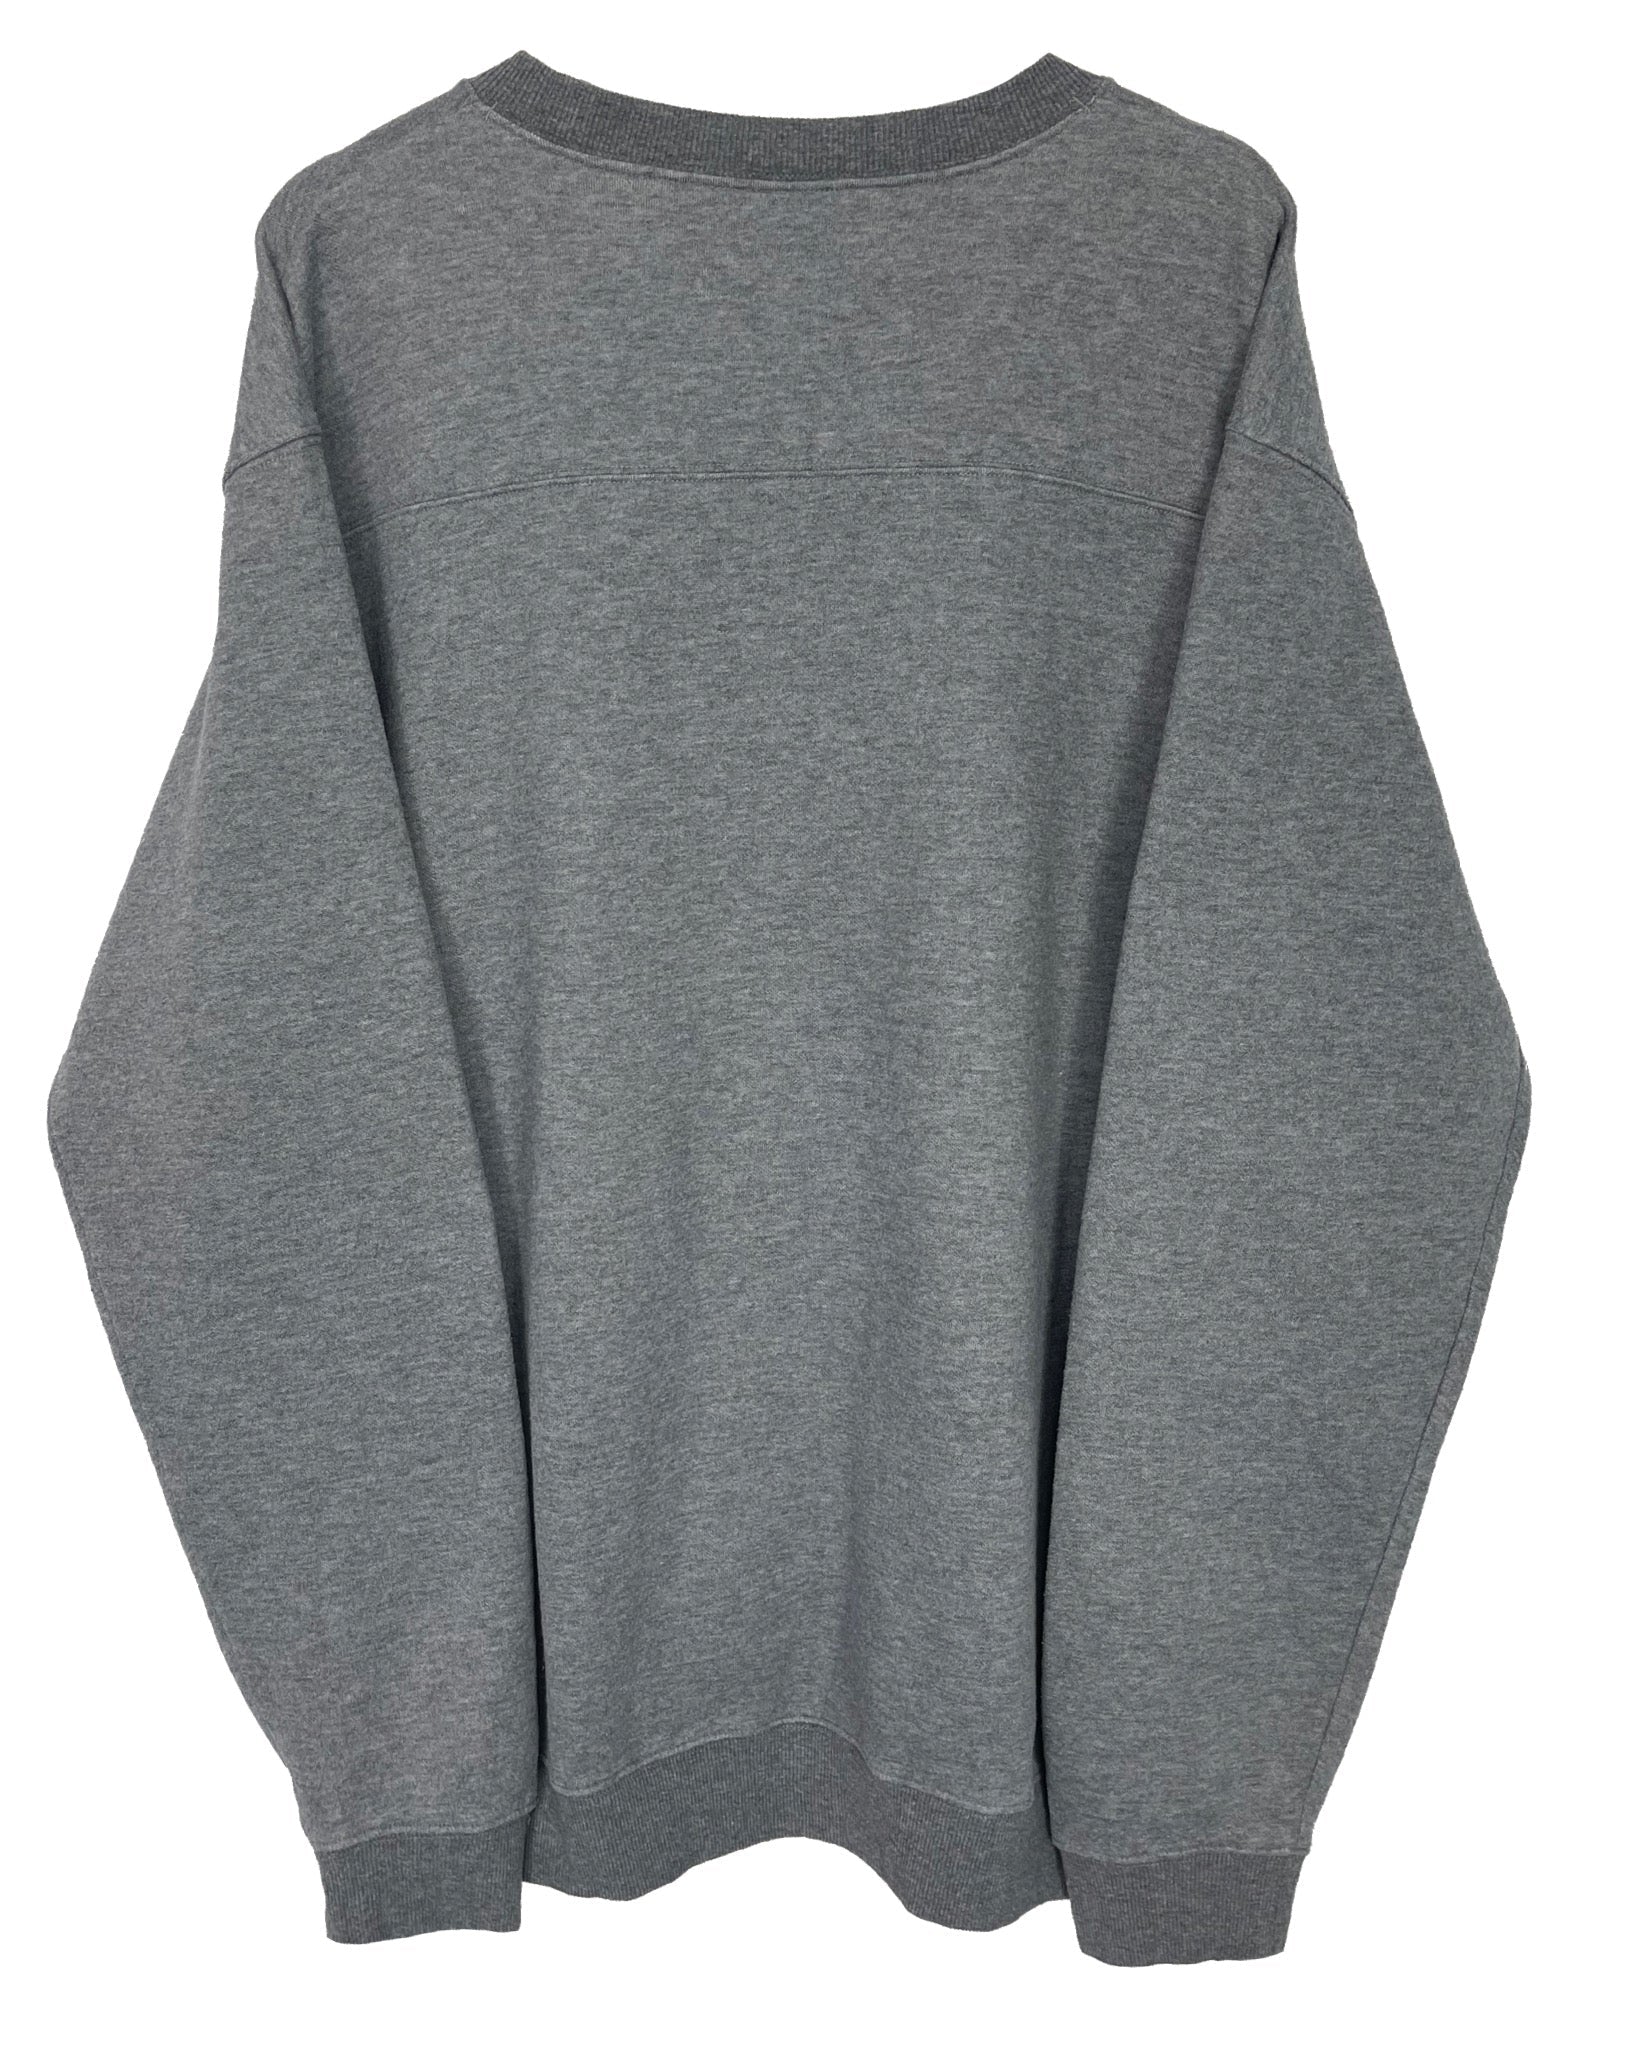  Sweatshirt Columbia Sweat - XL - PLOMOSTORE